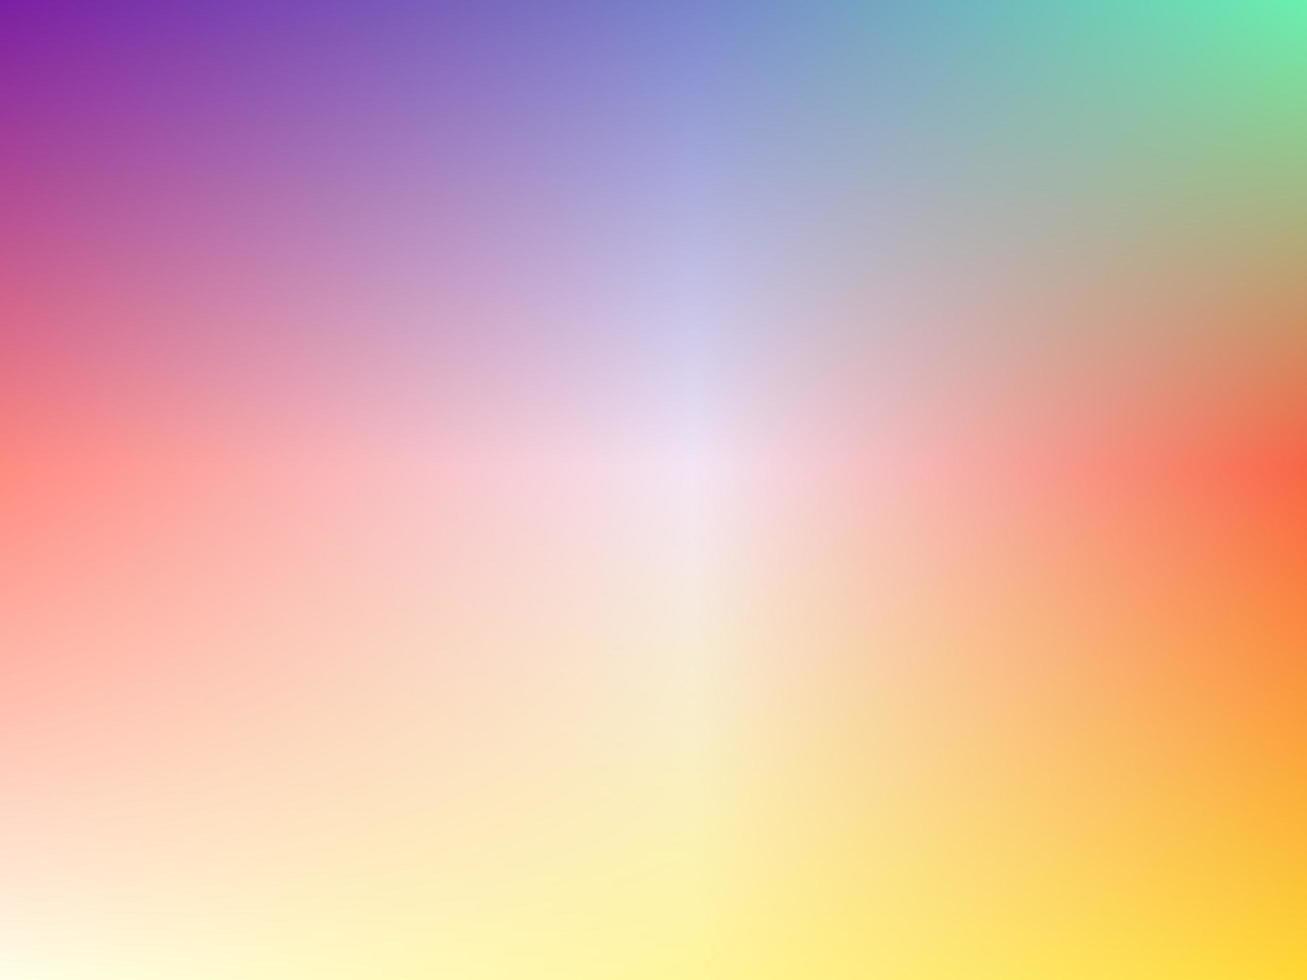 Được tối ưu hóa cho mọi loại màn hình, hình nền Rainbow Gradient tuyệt đẹp với sự kết hợp của các tông màu cầu vồng tươi sáng, sẽ khiến cho màn hình của bạn thêm phần sinh động và đầy màu sắc.